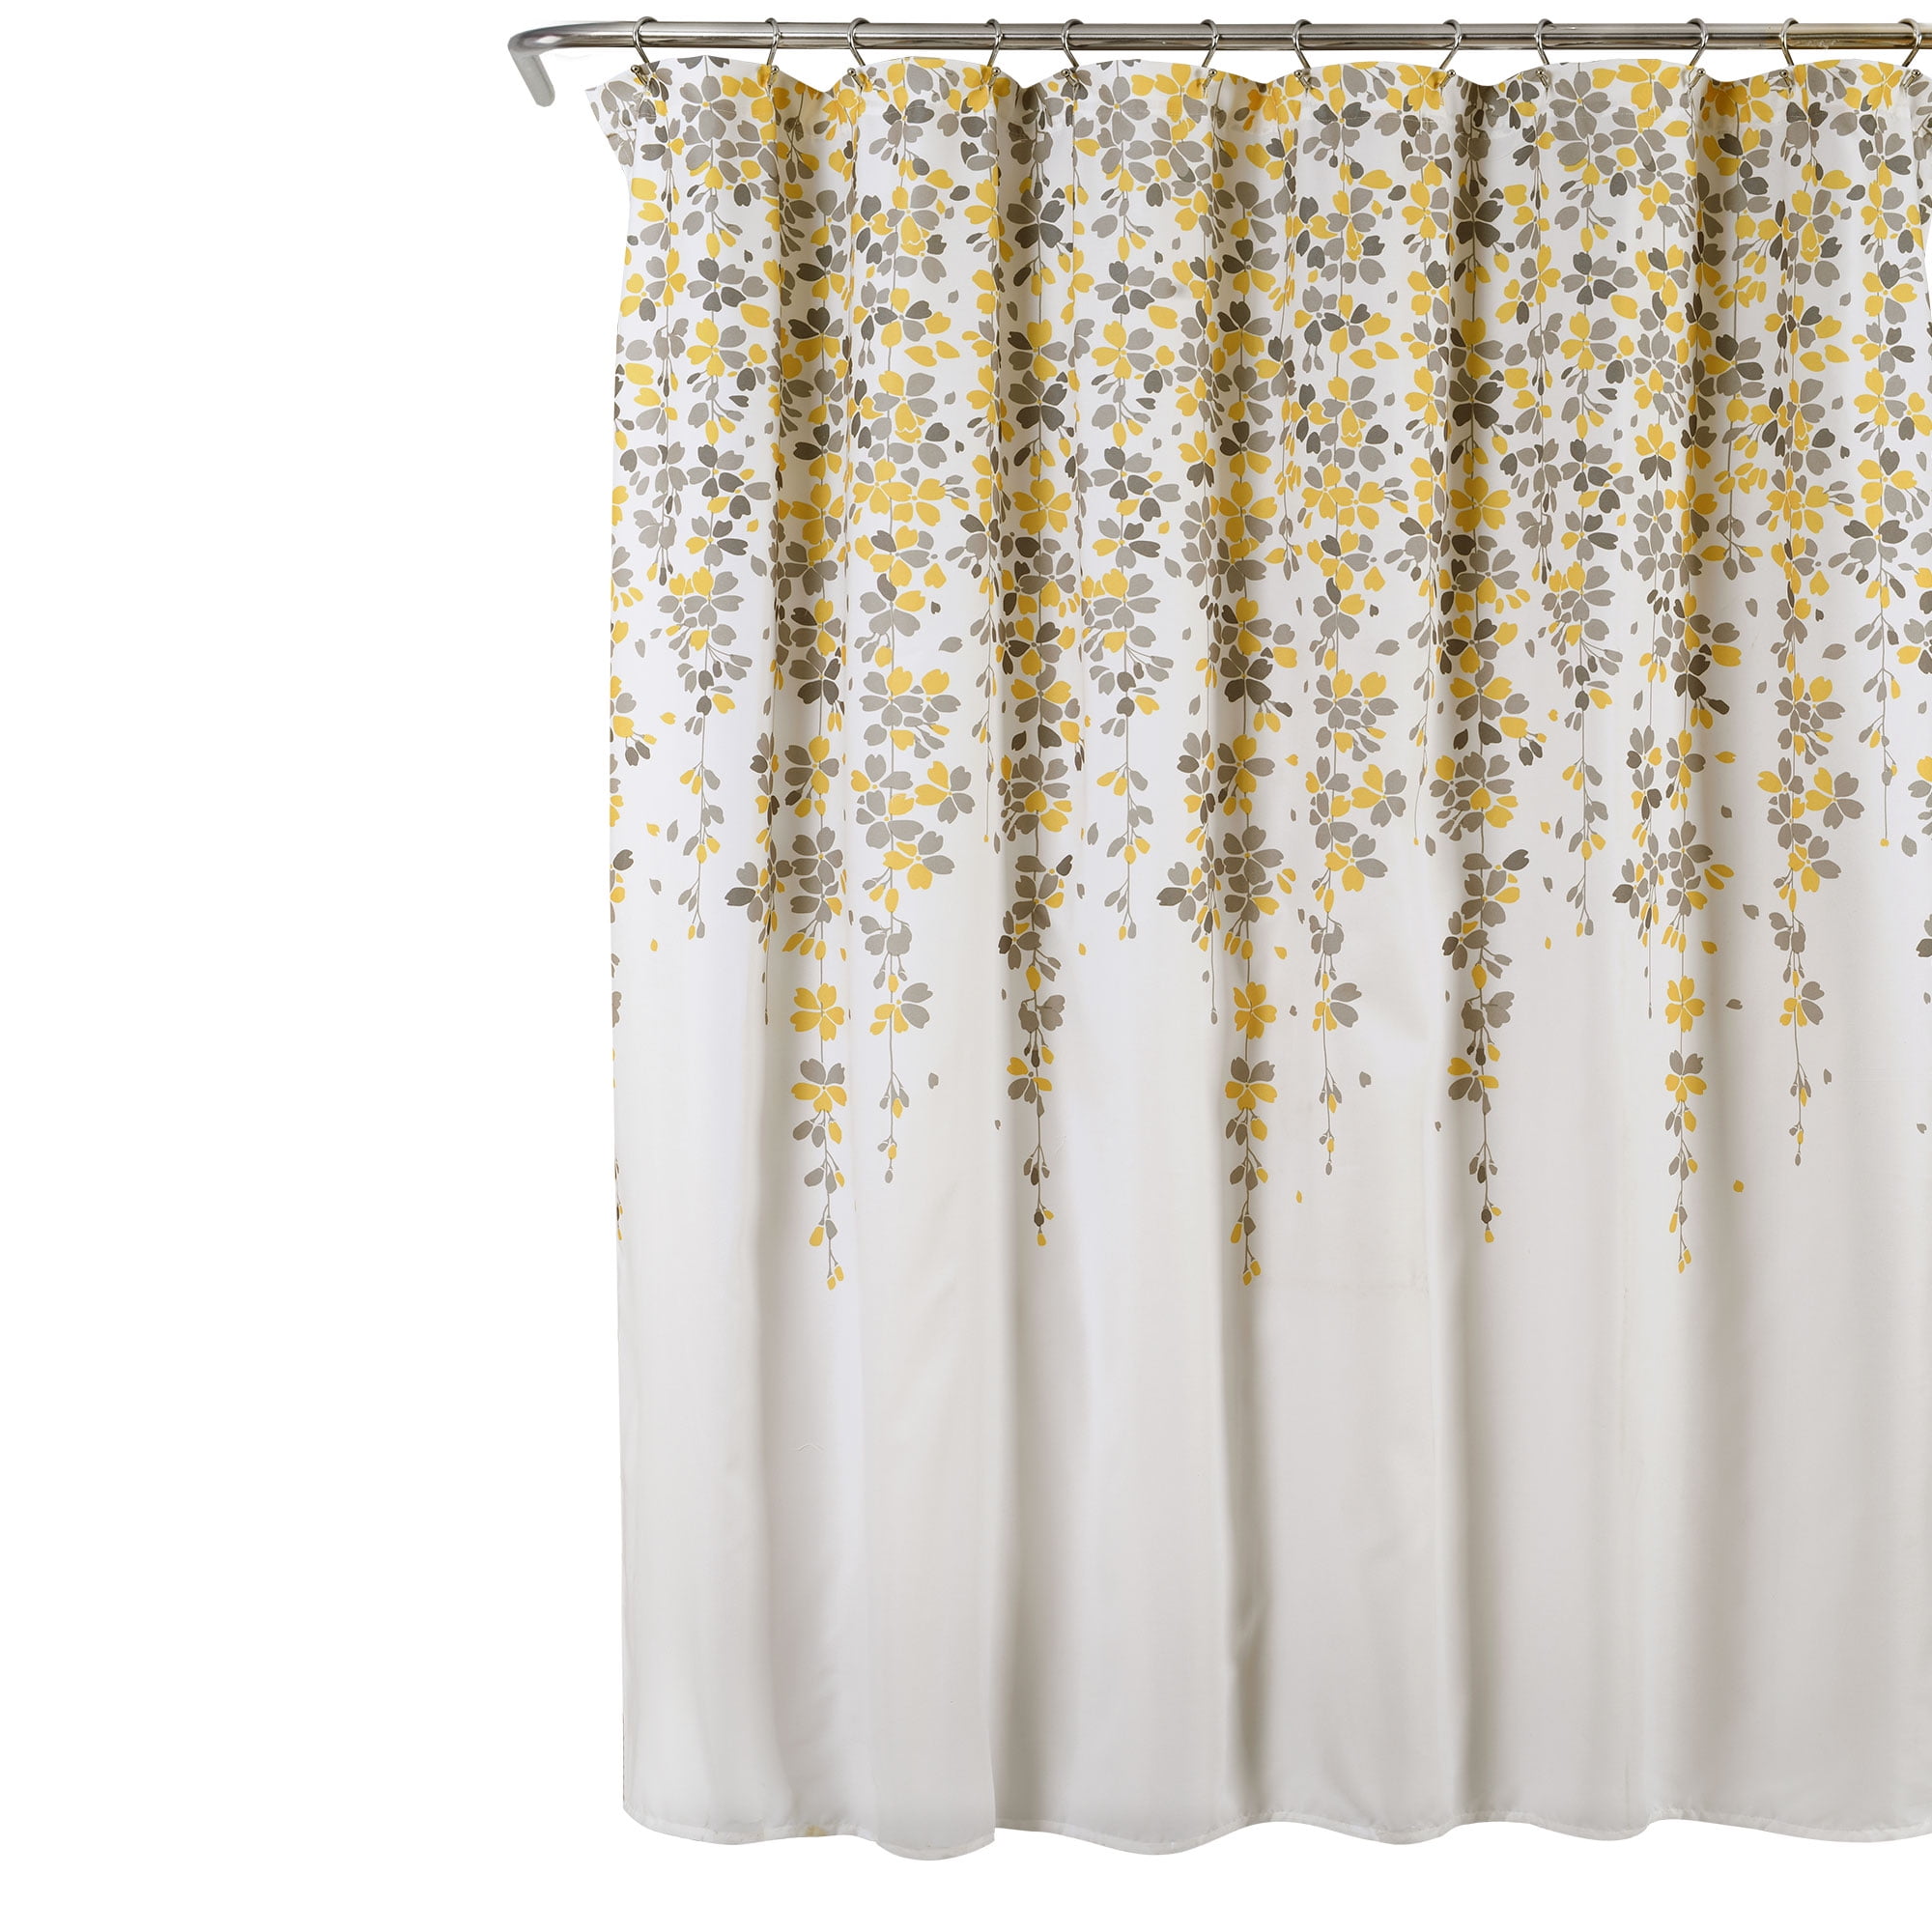 HANHAOKI Daisy Flower Pattern Yellow Shower Curtain 36 X 72